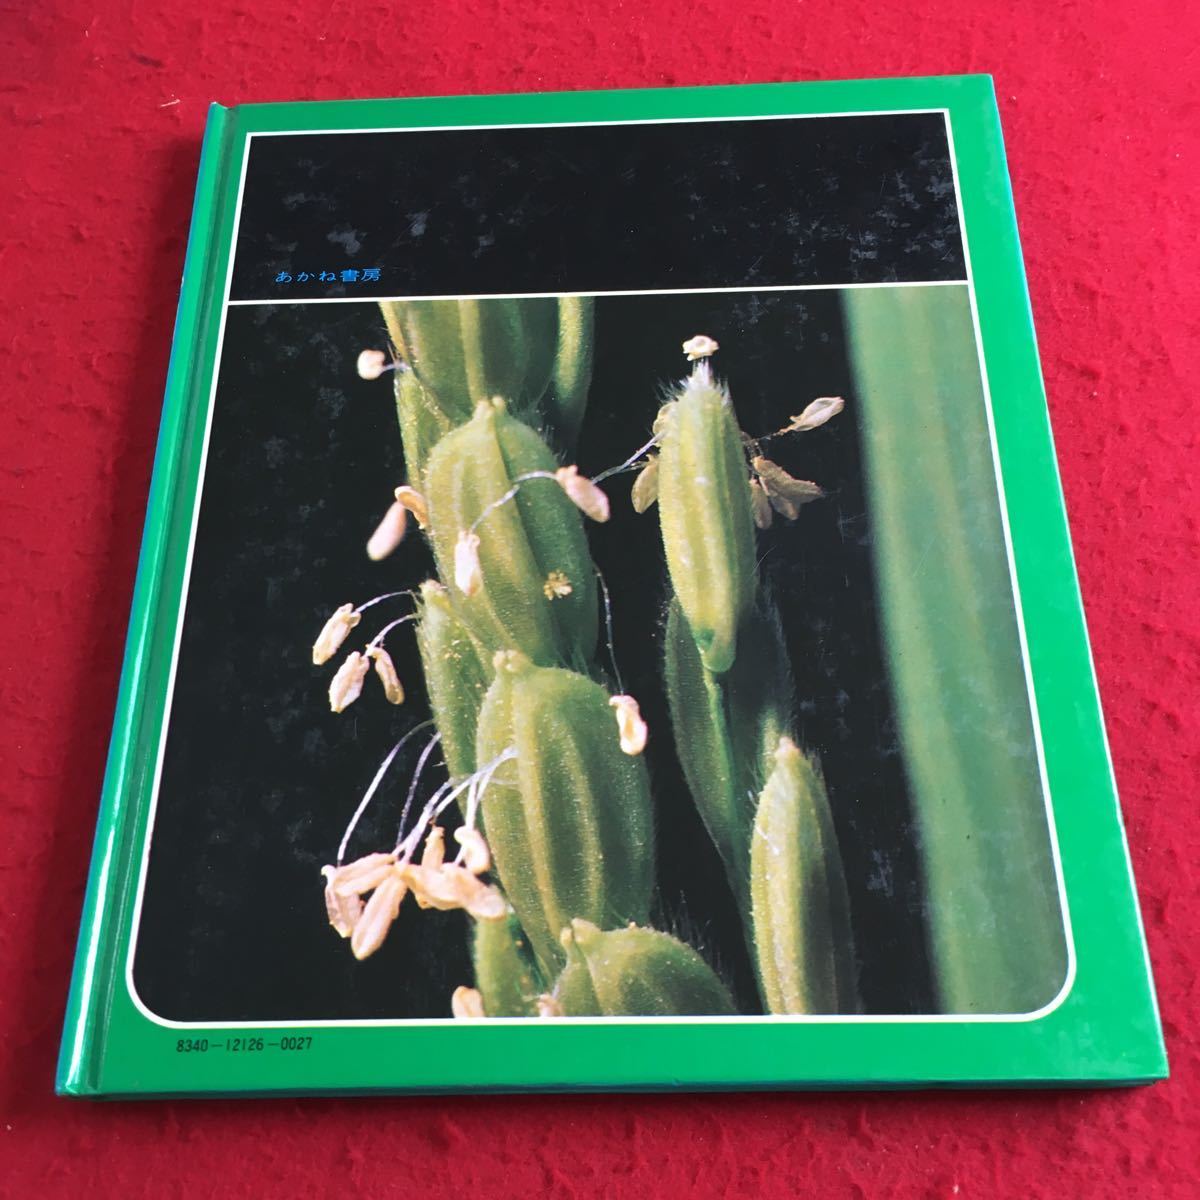 Y12-201 наука. альбом ine. один сырой . стрела .... книжный магазин 1981 год выпуск ....... сырой . заливное рисовое поле наблюдение .... болезнь . насекомое ine.mgi и т.п. 